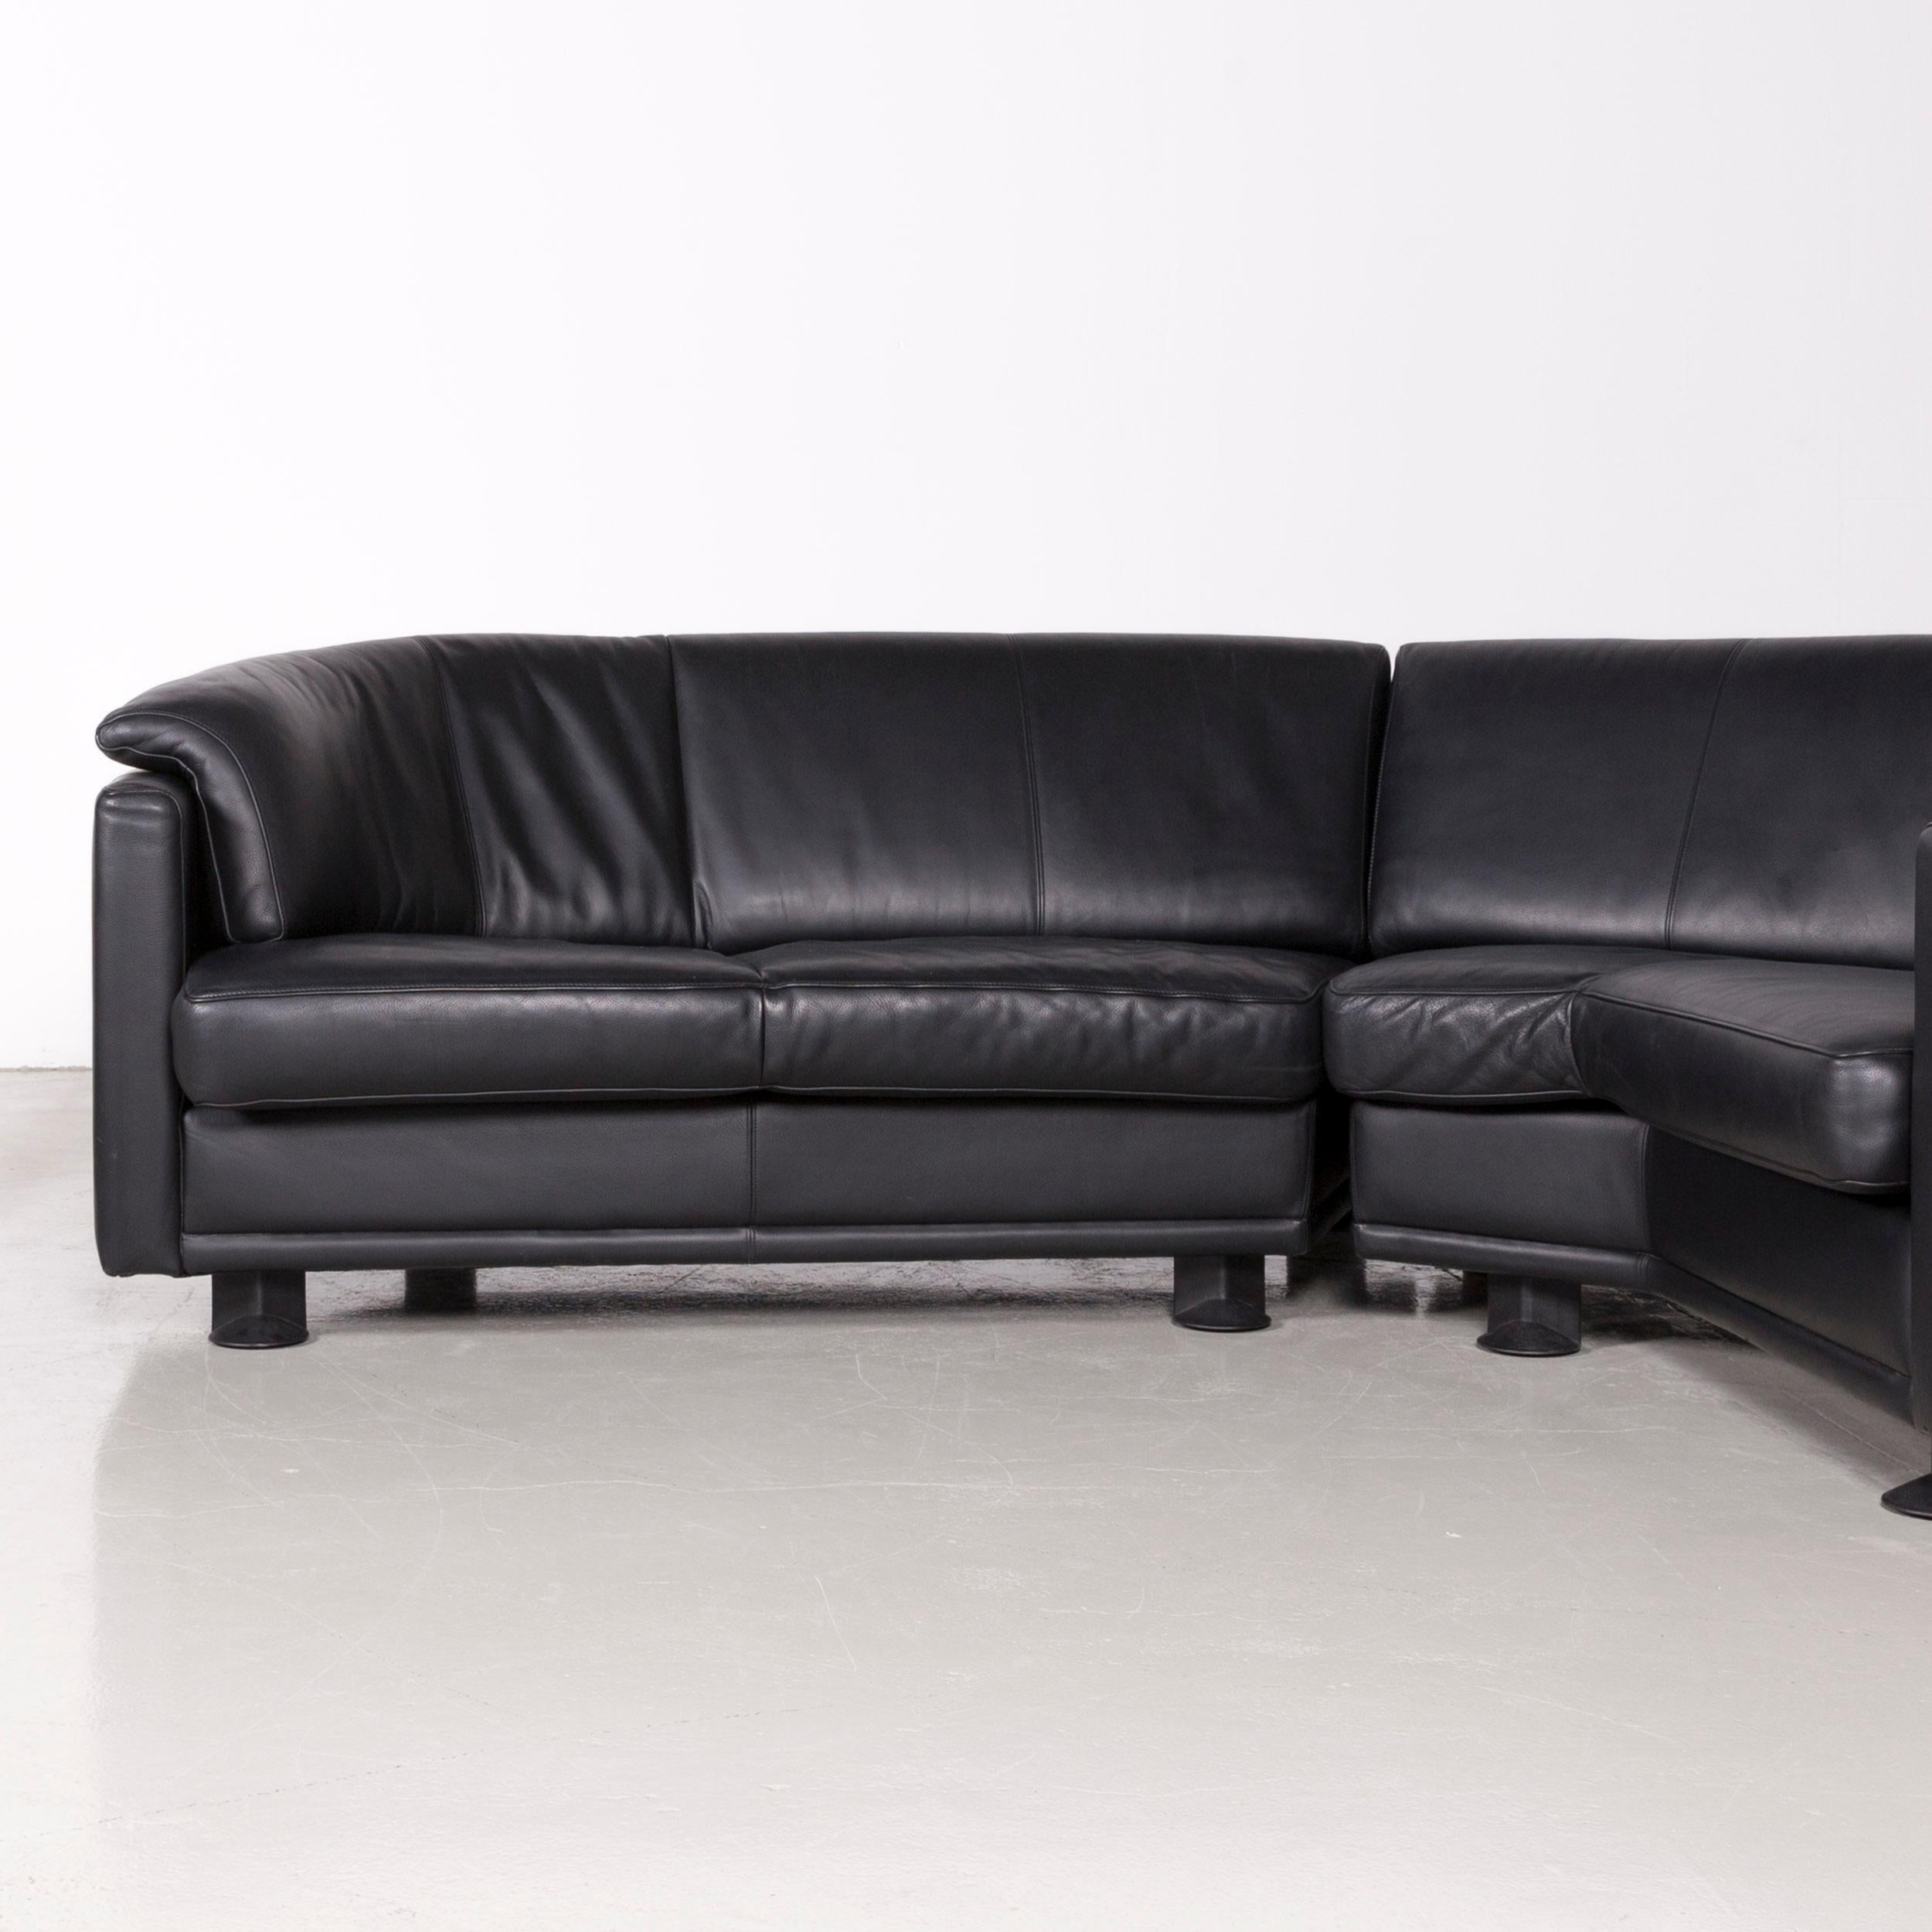 German Leolux Designer Corner Couch Leather Black Sofa For Sale